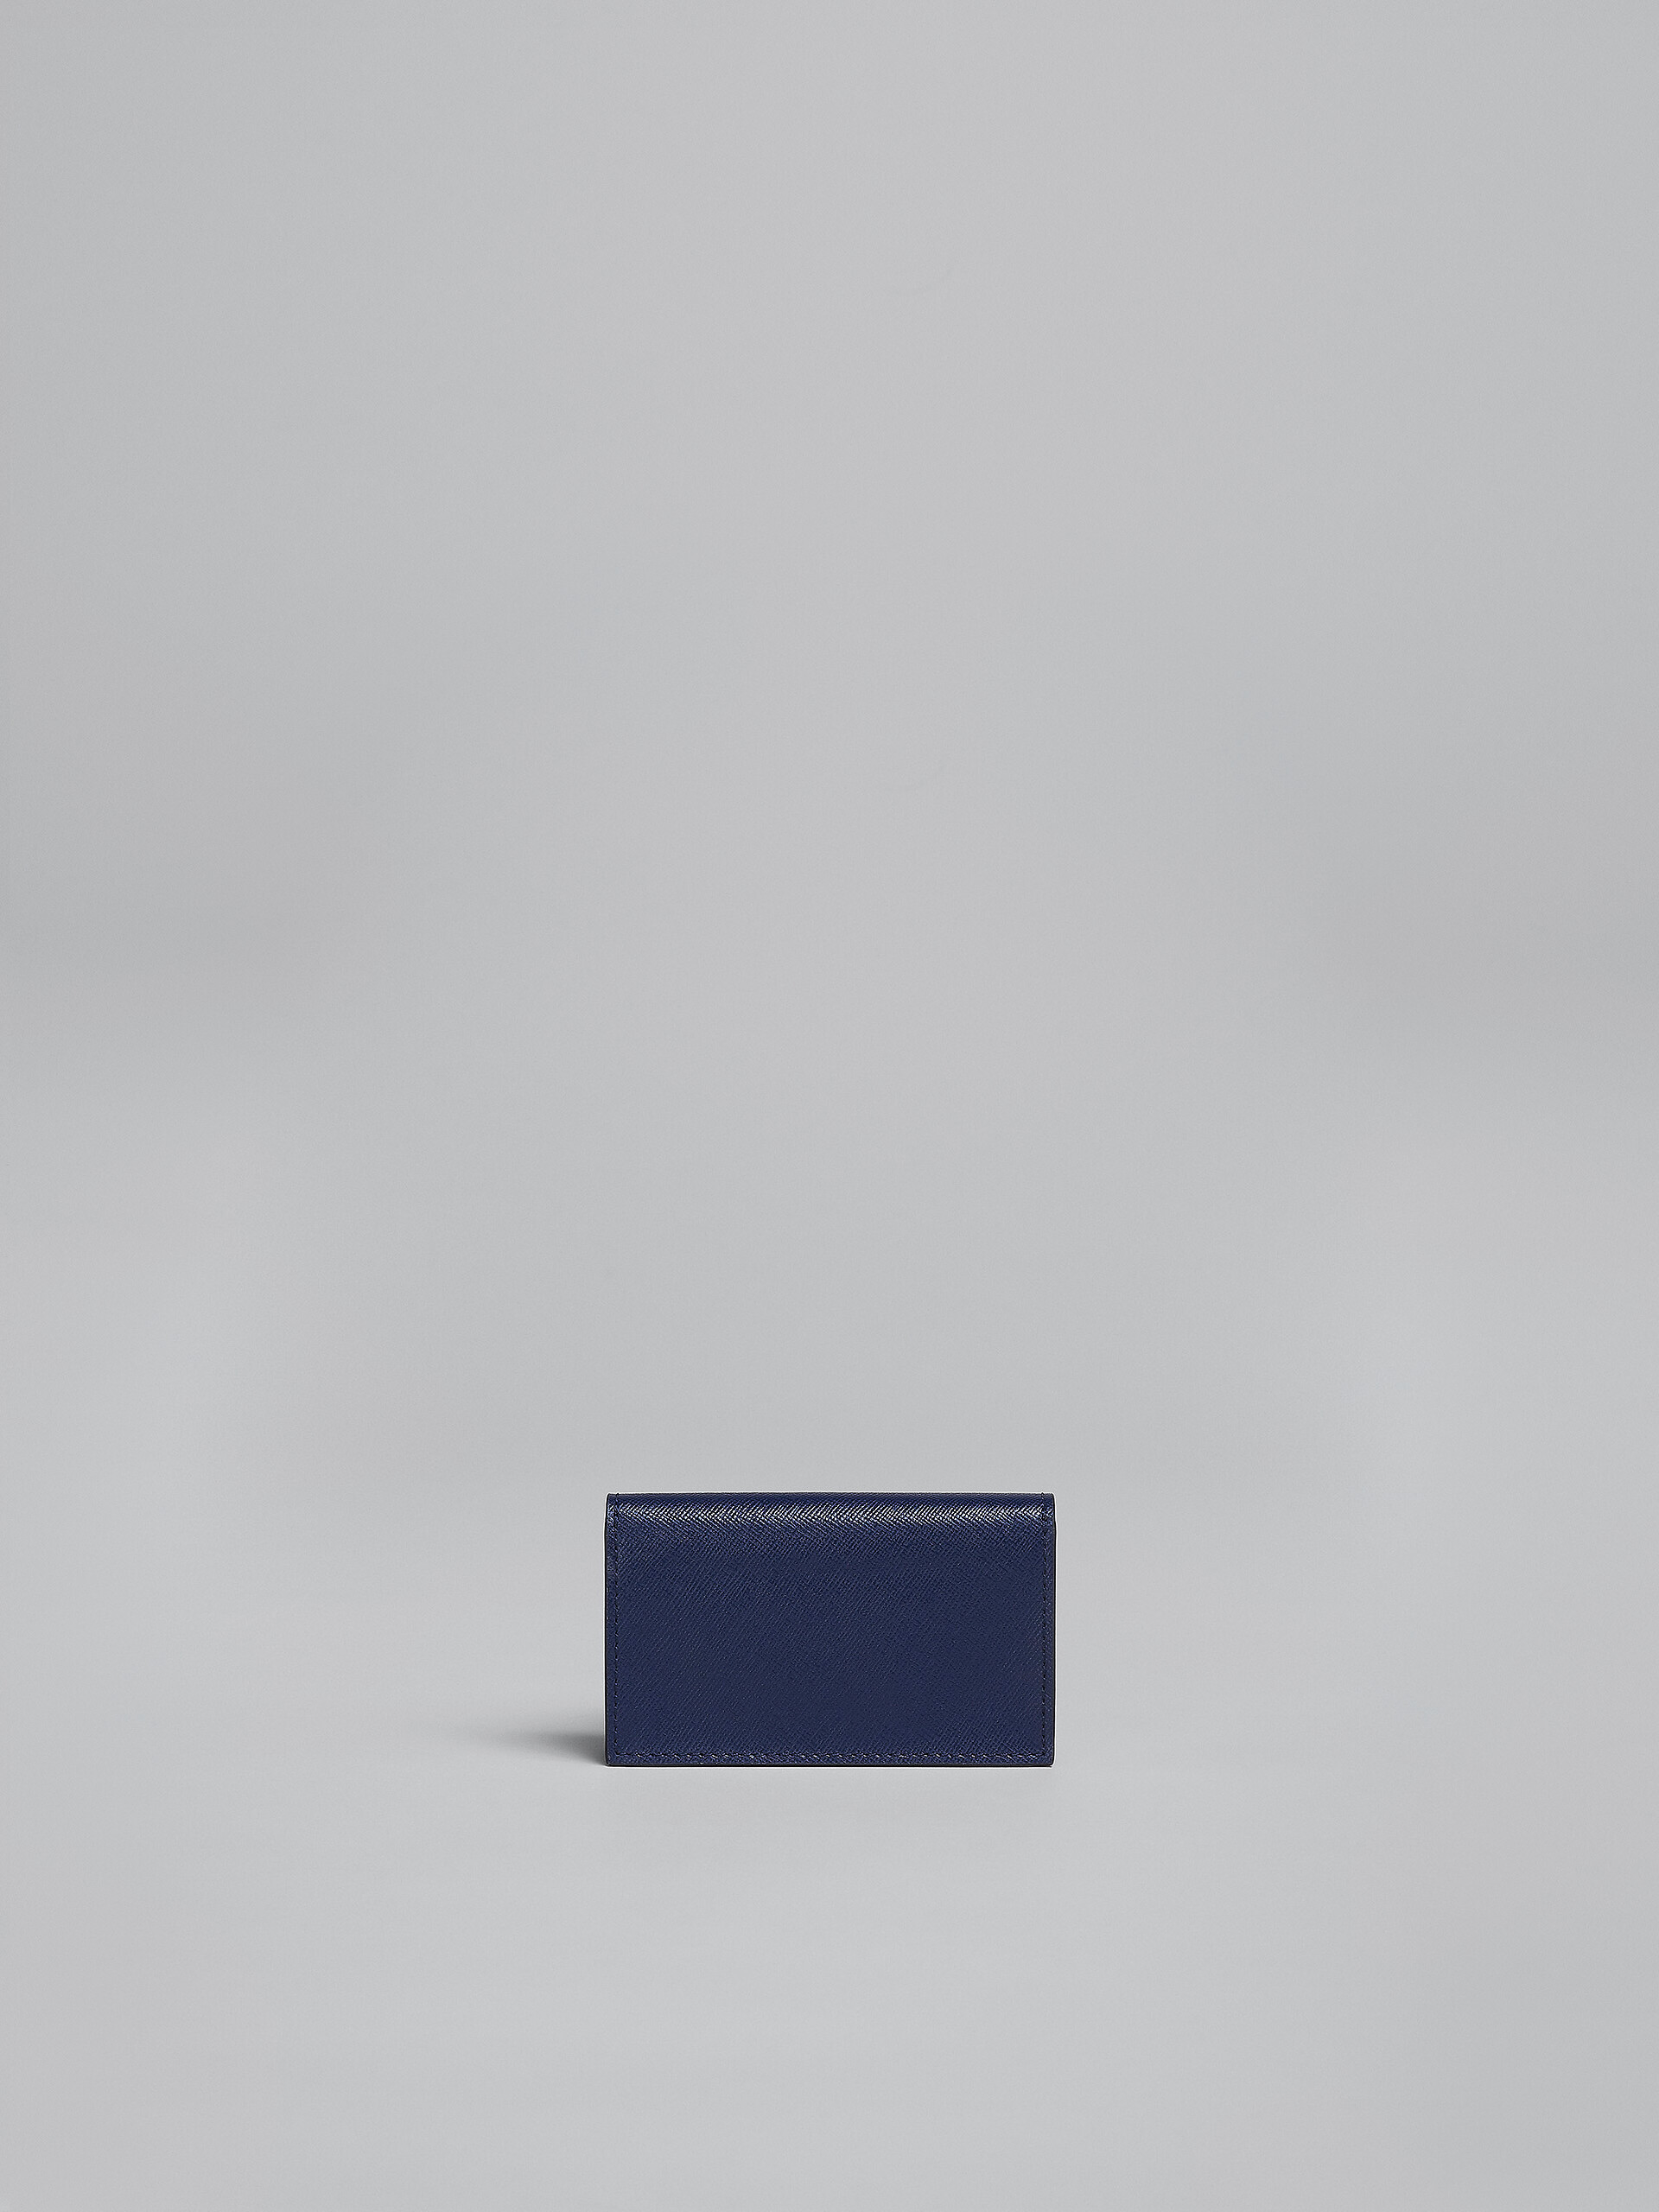 グリーン、ホワイト、ブラウン サフィアーノレザー製ビジネスカードケース - 財布 - Image 3